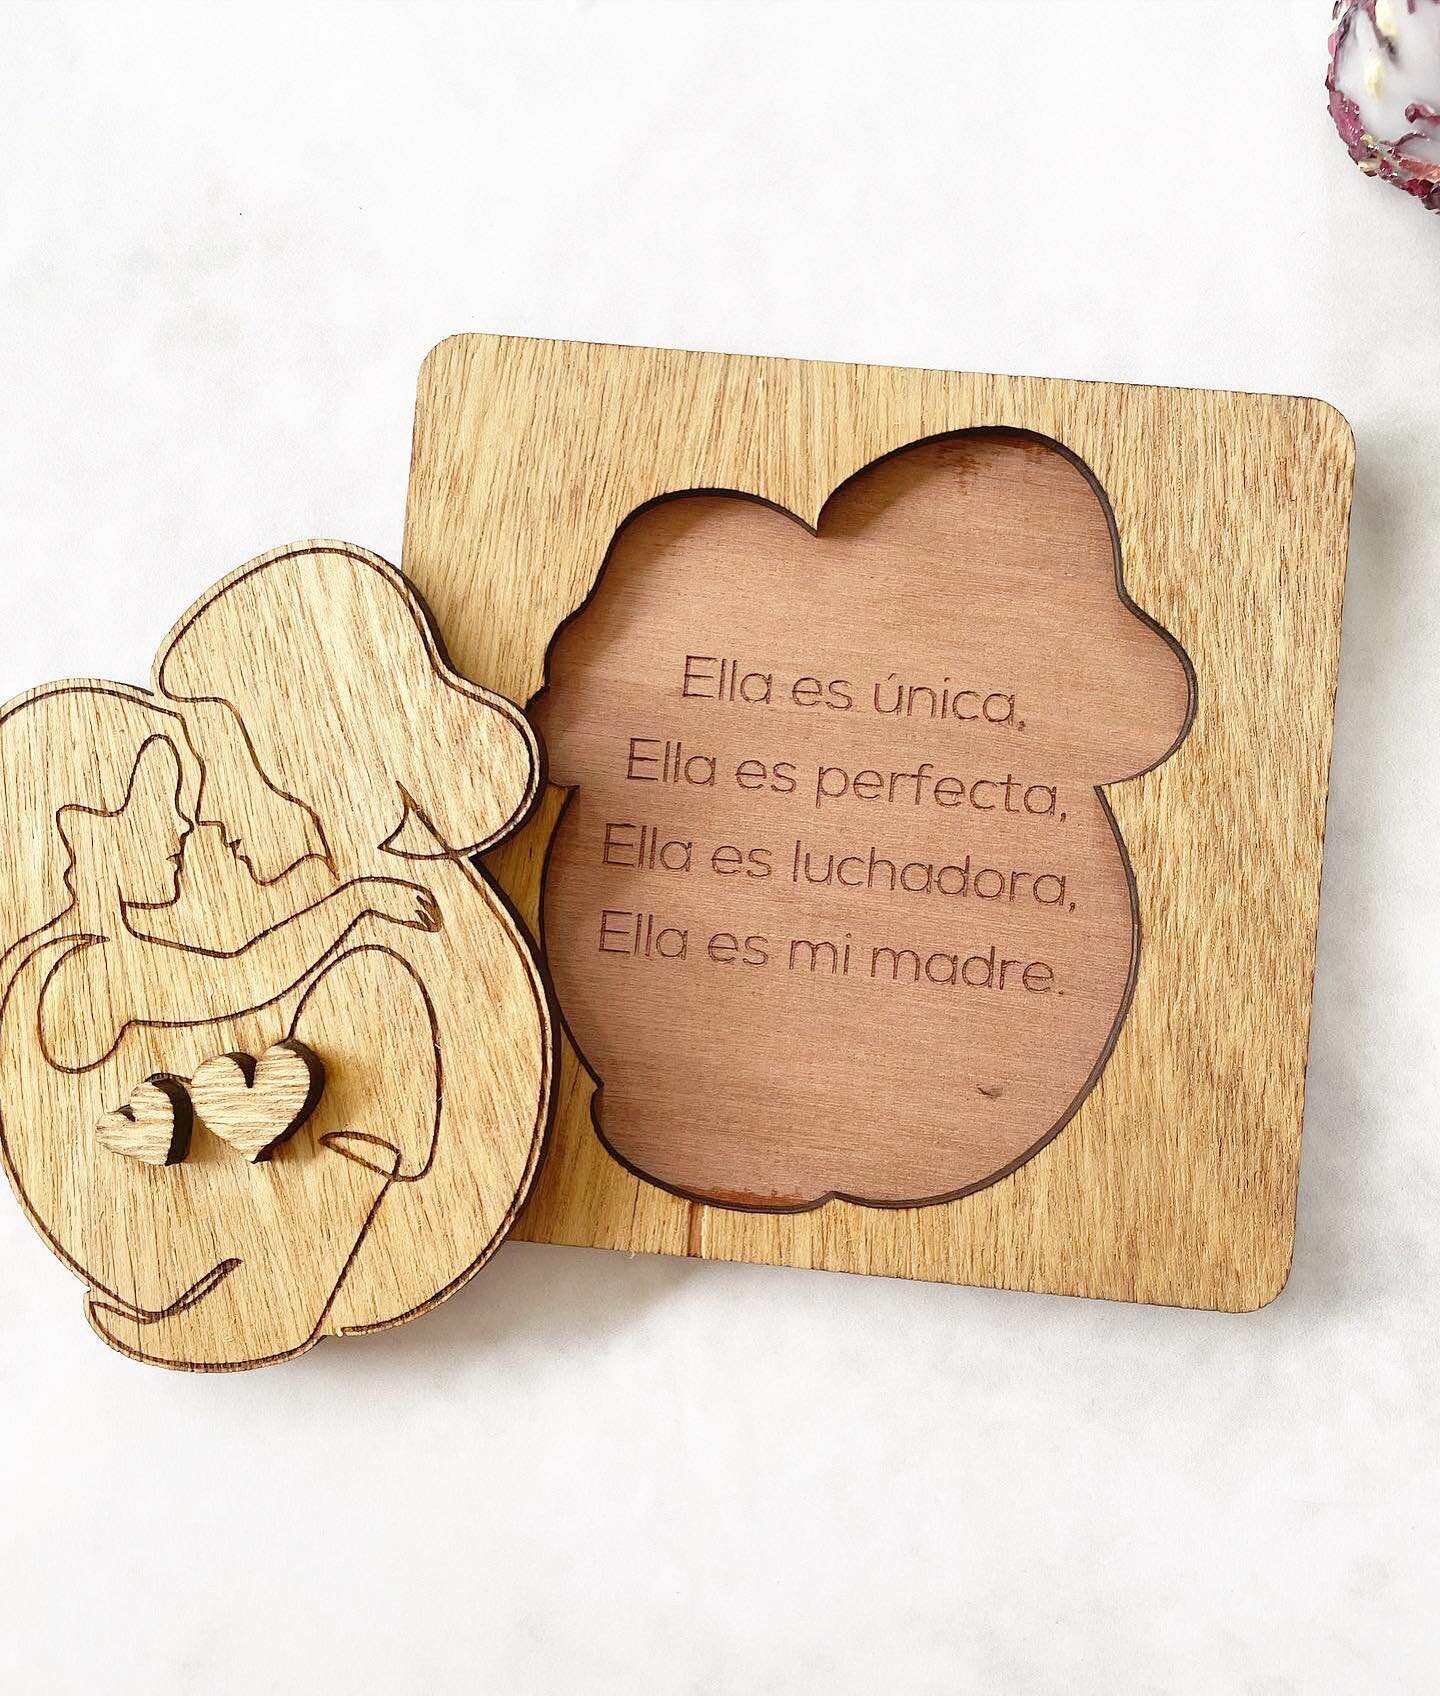 Plaquita en madera con mensaje oculto, personal&iacute;zalo como prefieras. 👩&zwj;👧🤰🏻#rofgraphic #diadelasmadres #regalosoriginales #regalosmama